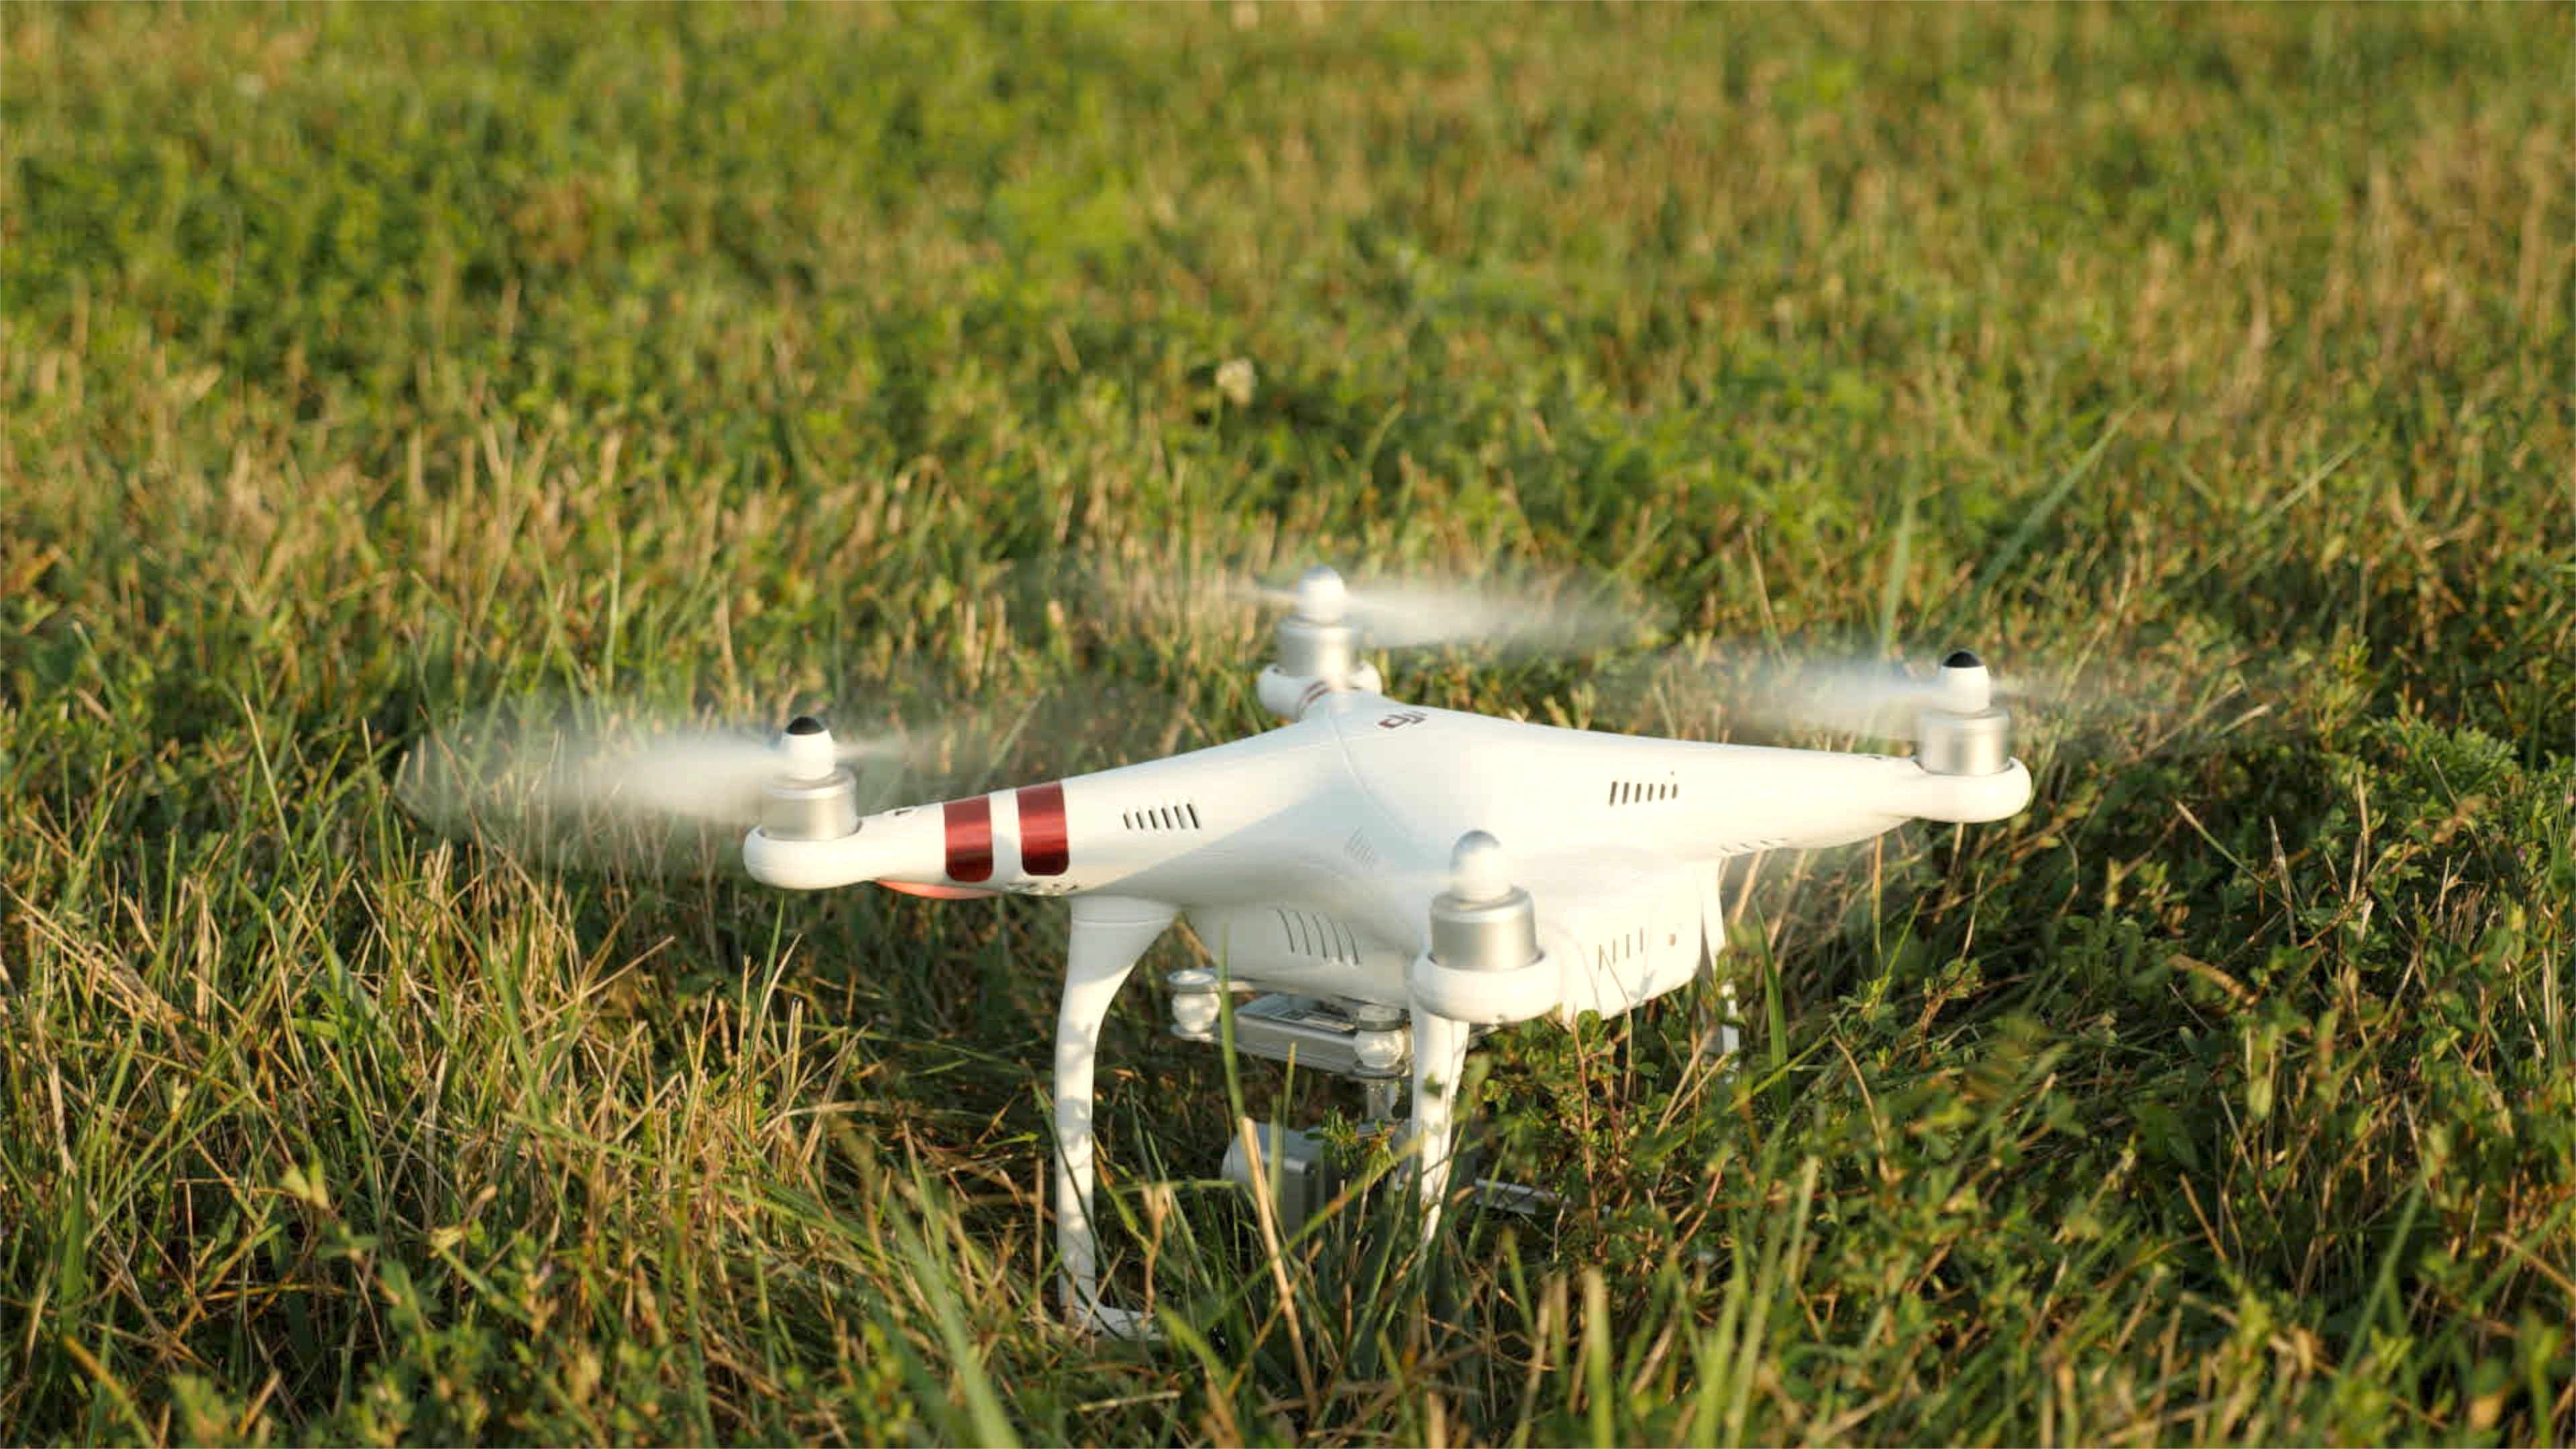 Drone: DJI Phantom 3 Standard, An aircraft without passengers, Quadcopter. 3840x2160 4K Wallpaper.